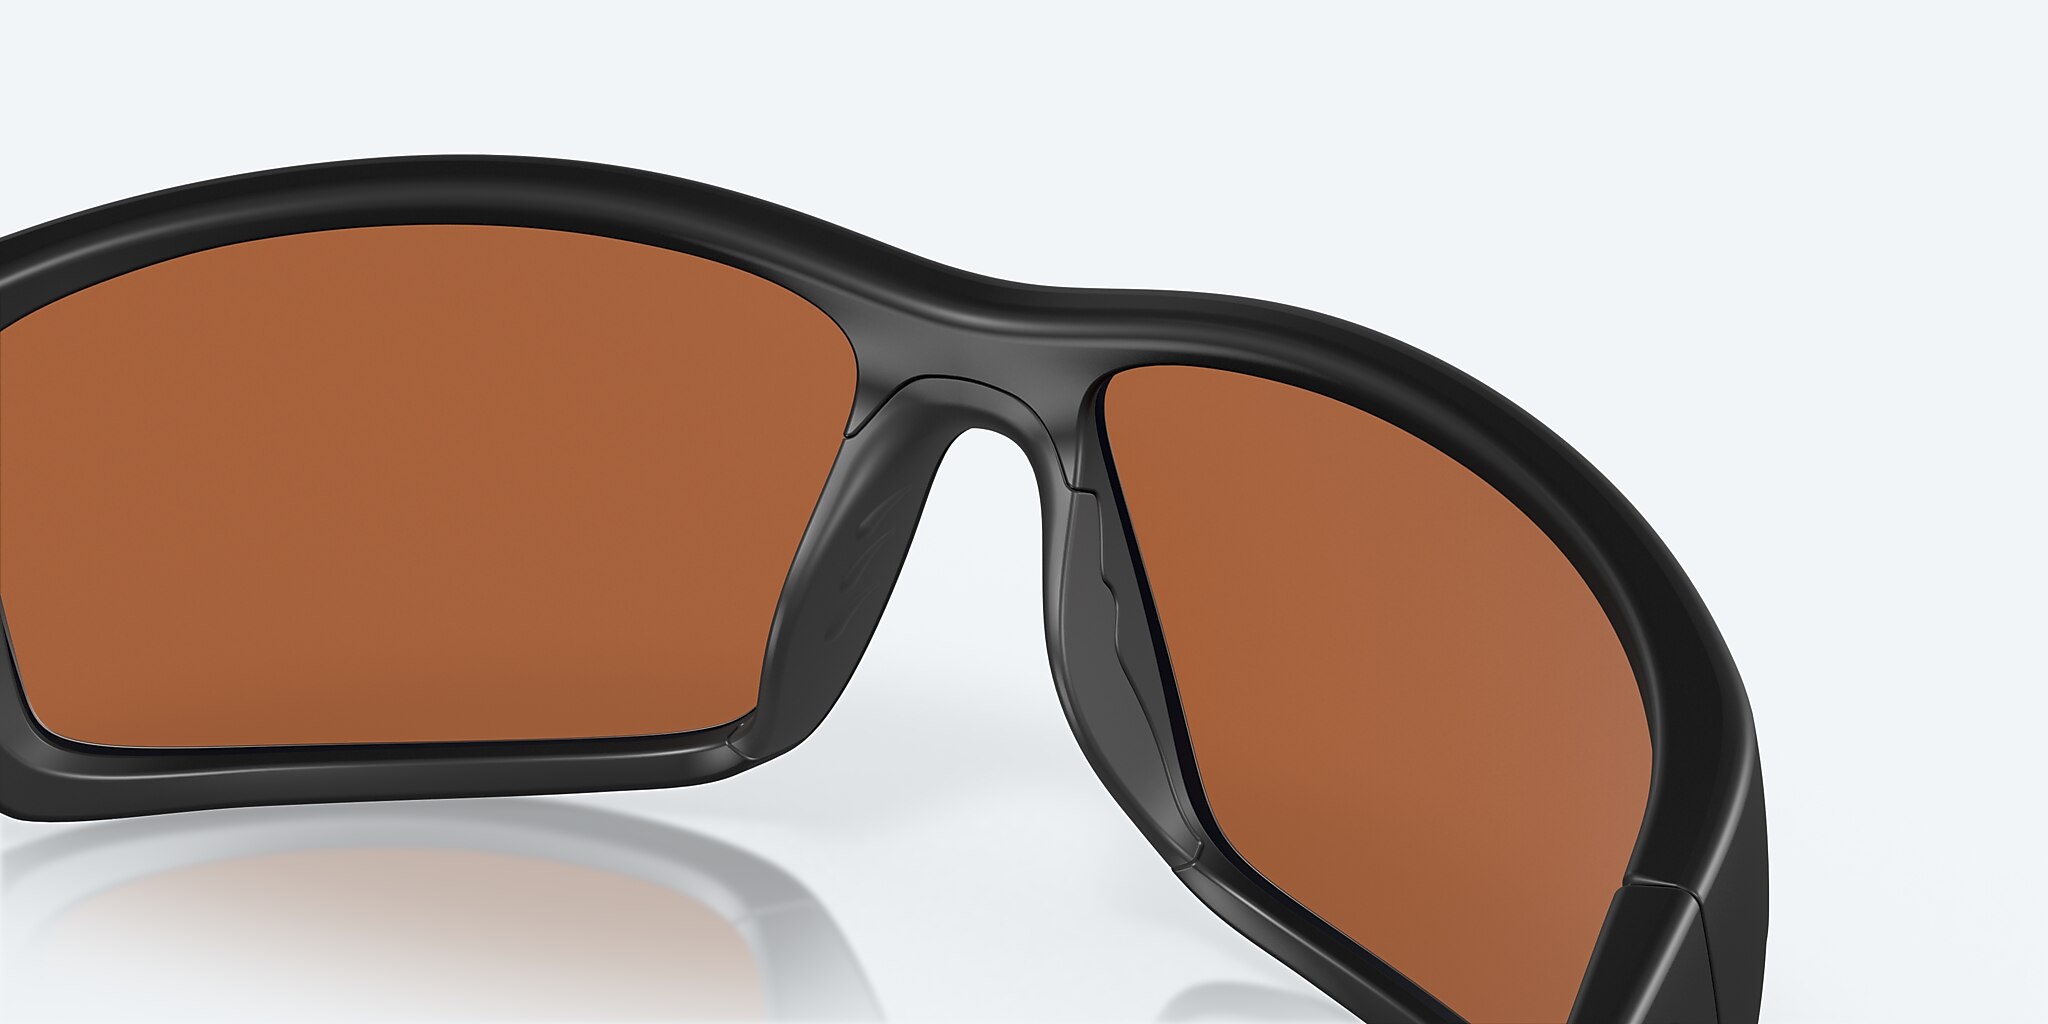 Reefton PRO Polarized Sunglasses in Sunrise Silver Mirror